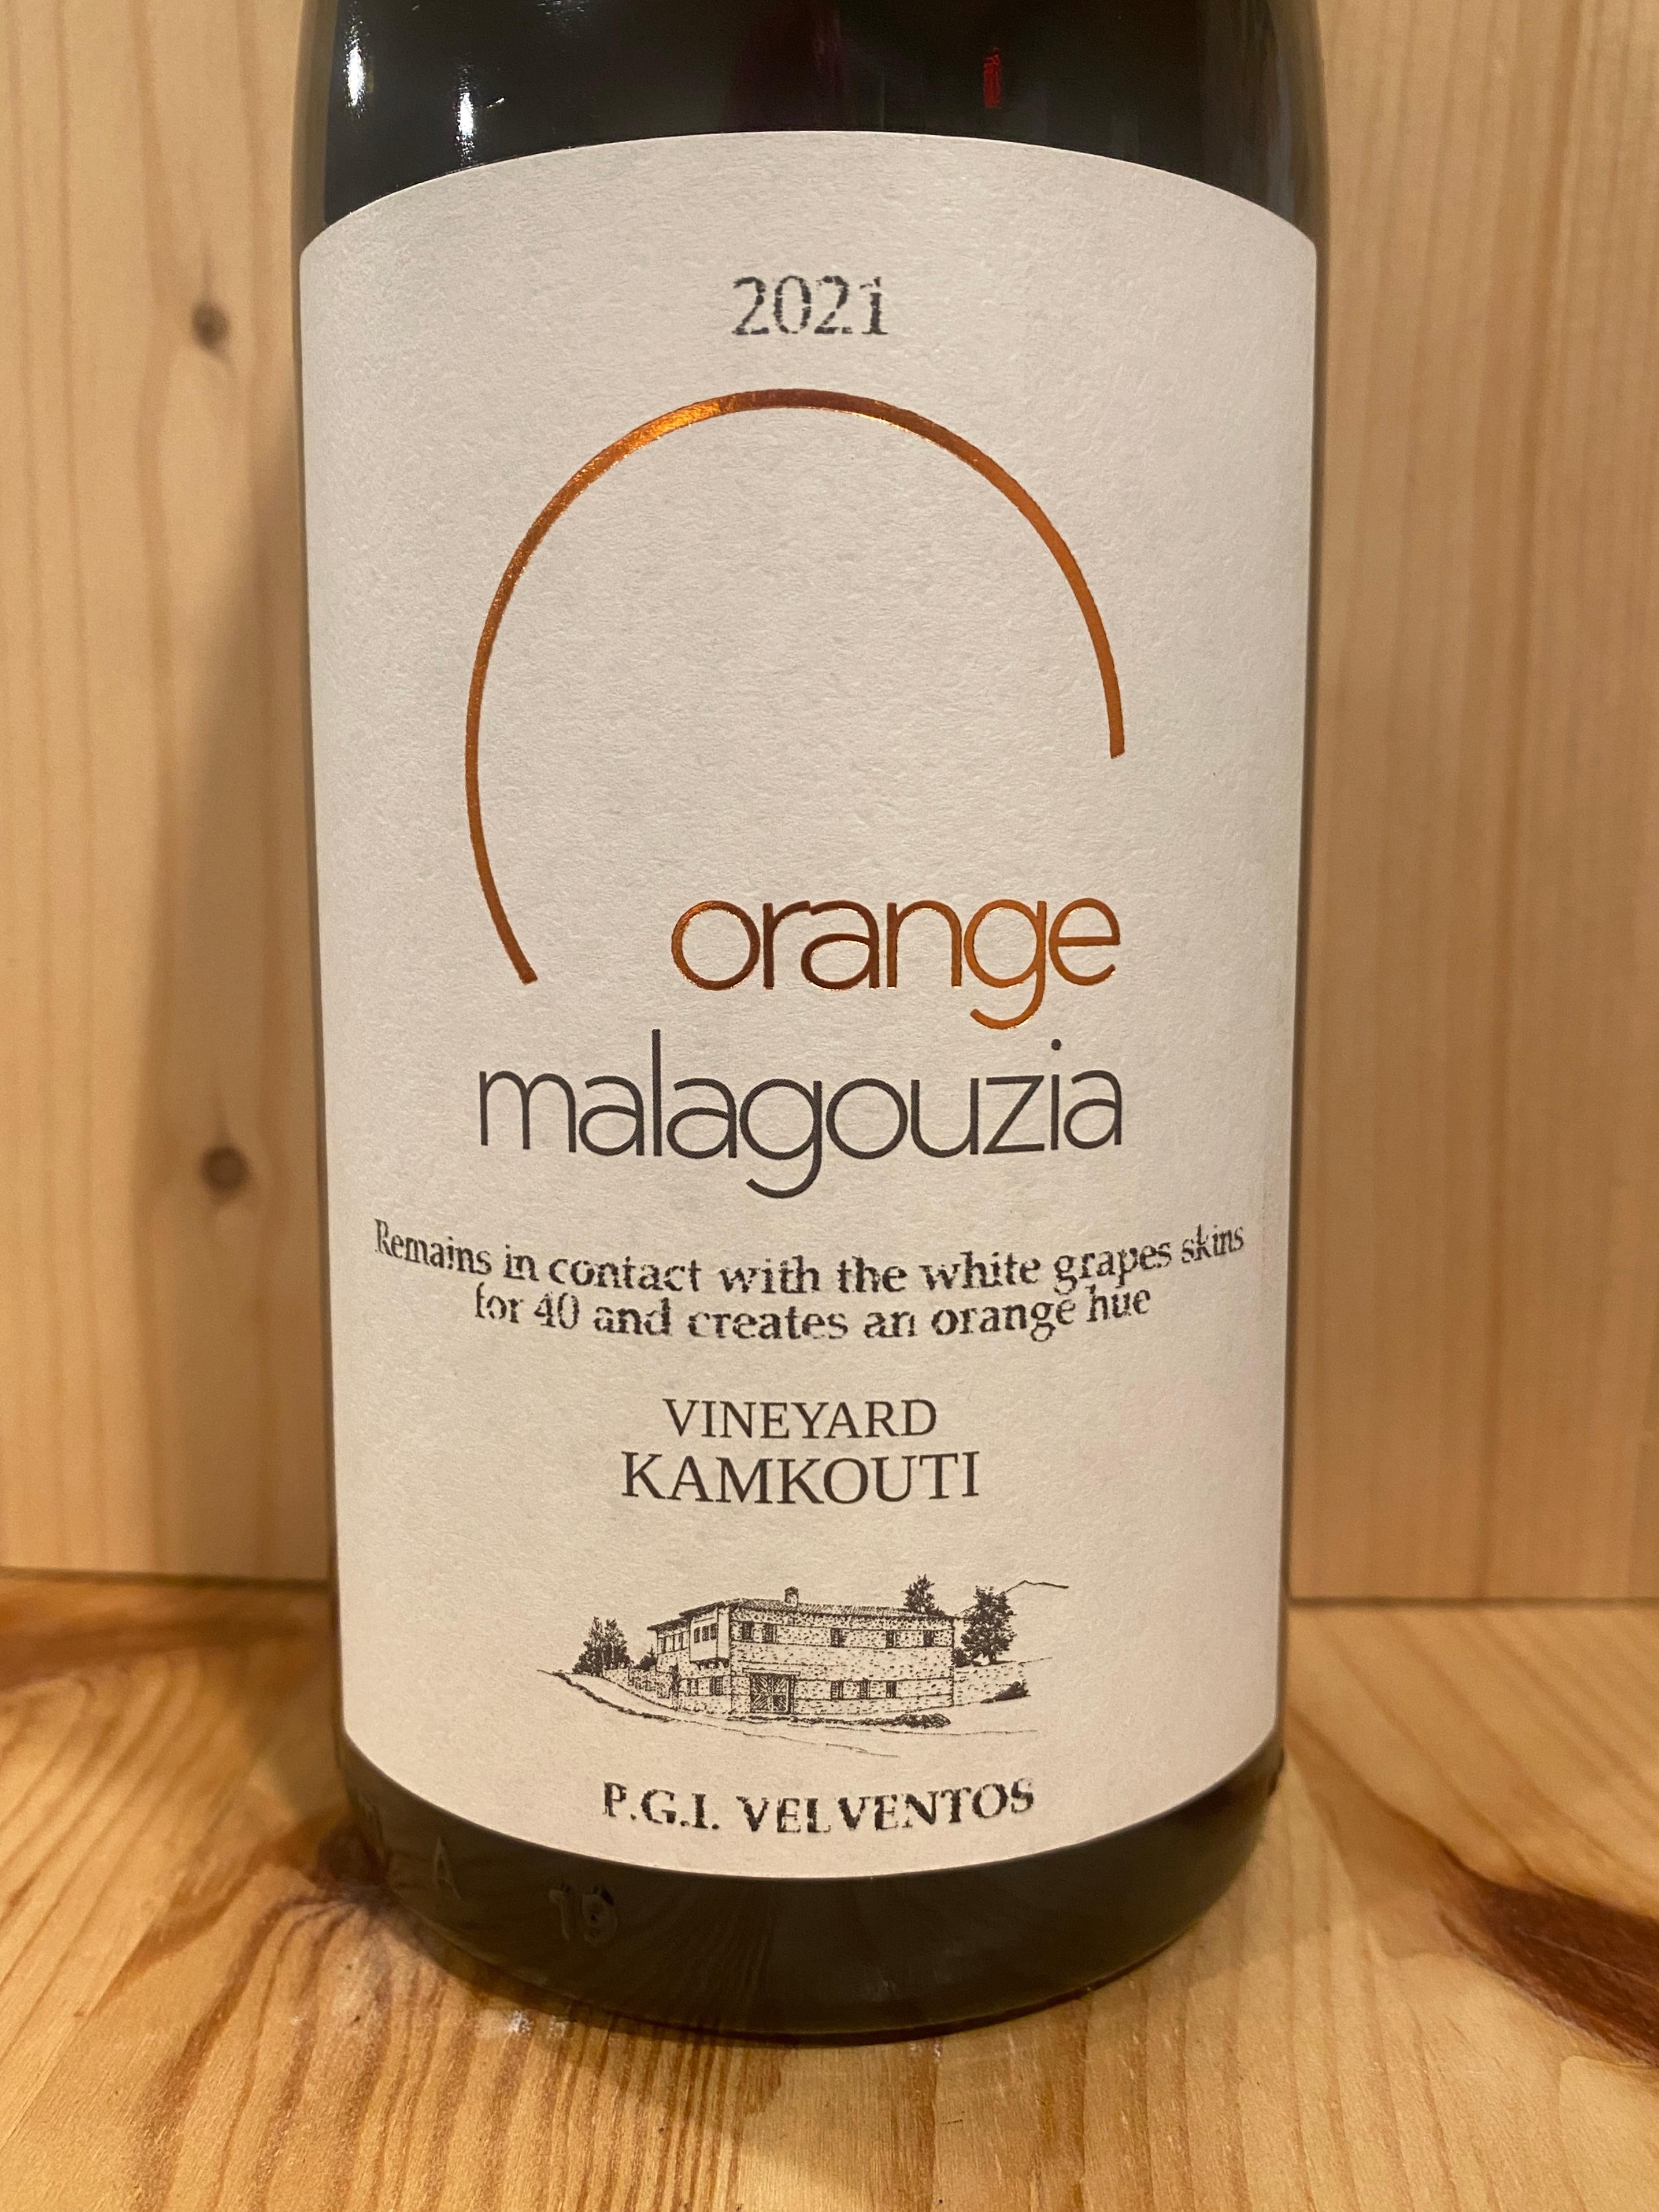 Vineyard Kamkouti Orange Malagouzia 2021: Valventos, West Macedonia, Greece